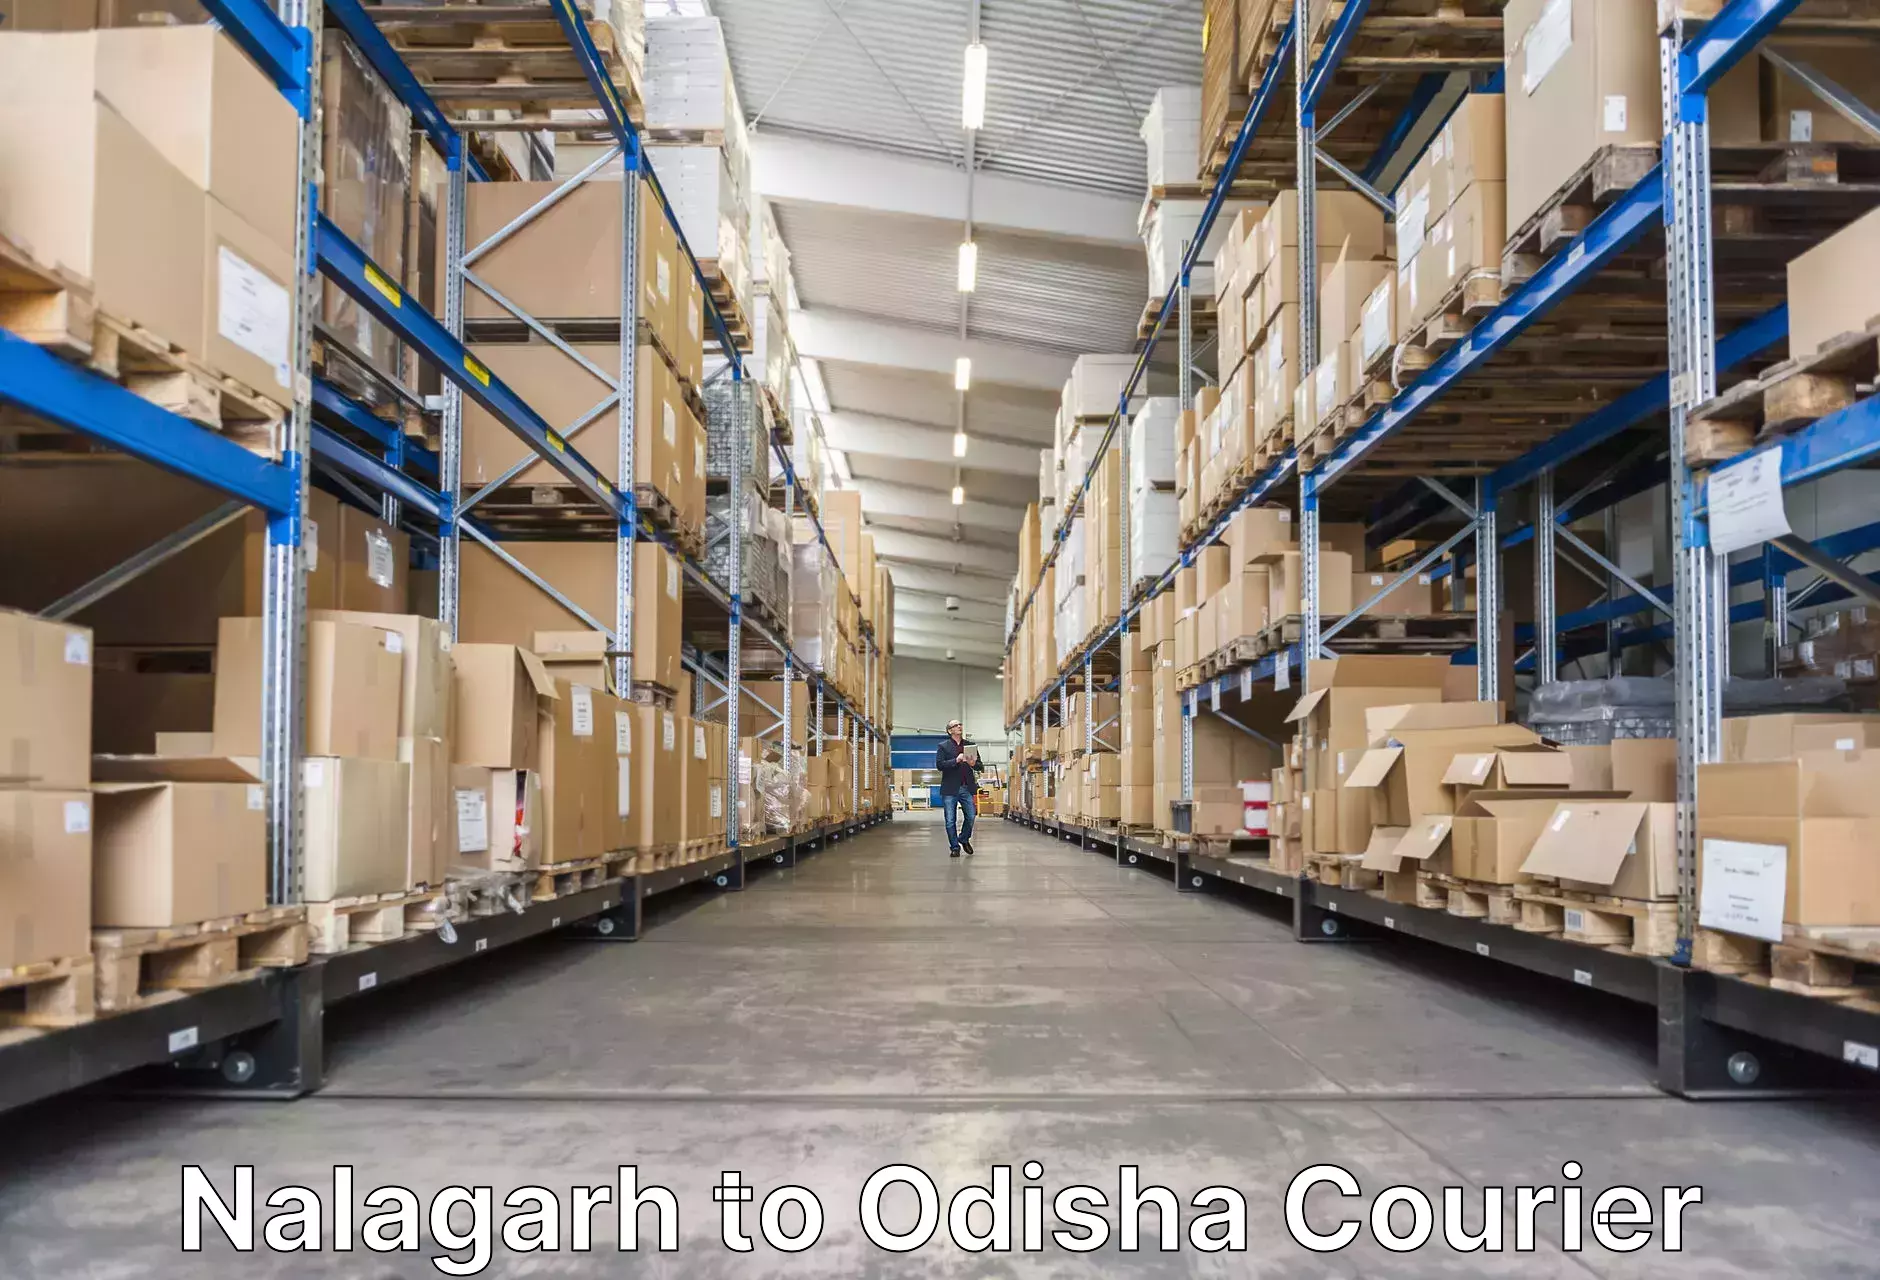 Baggage shipping experience Nalagarh to Bahalda